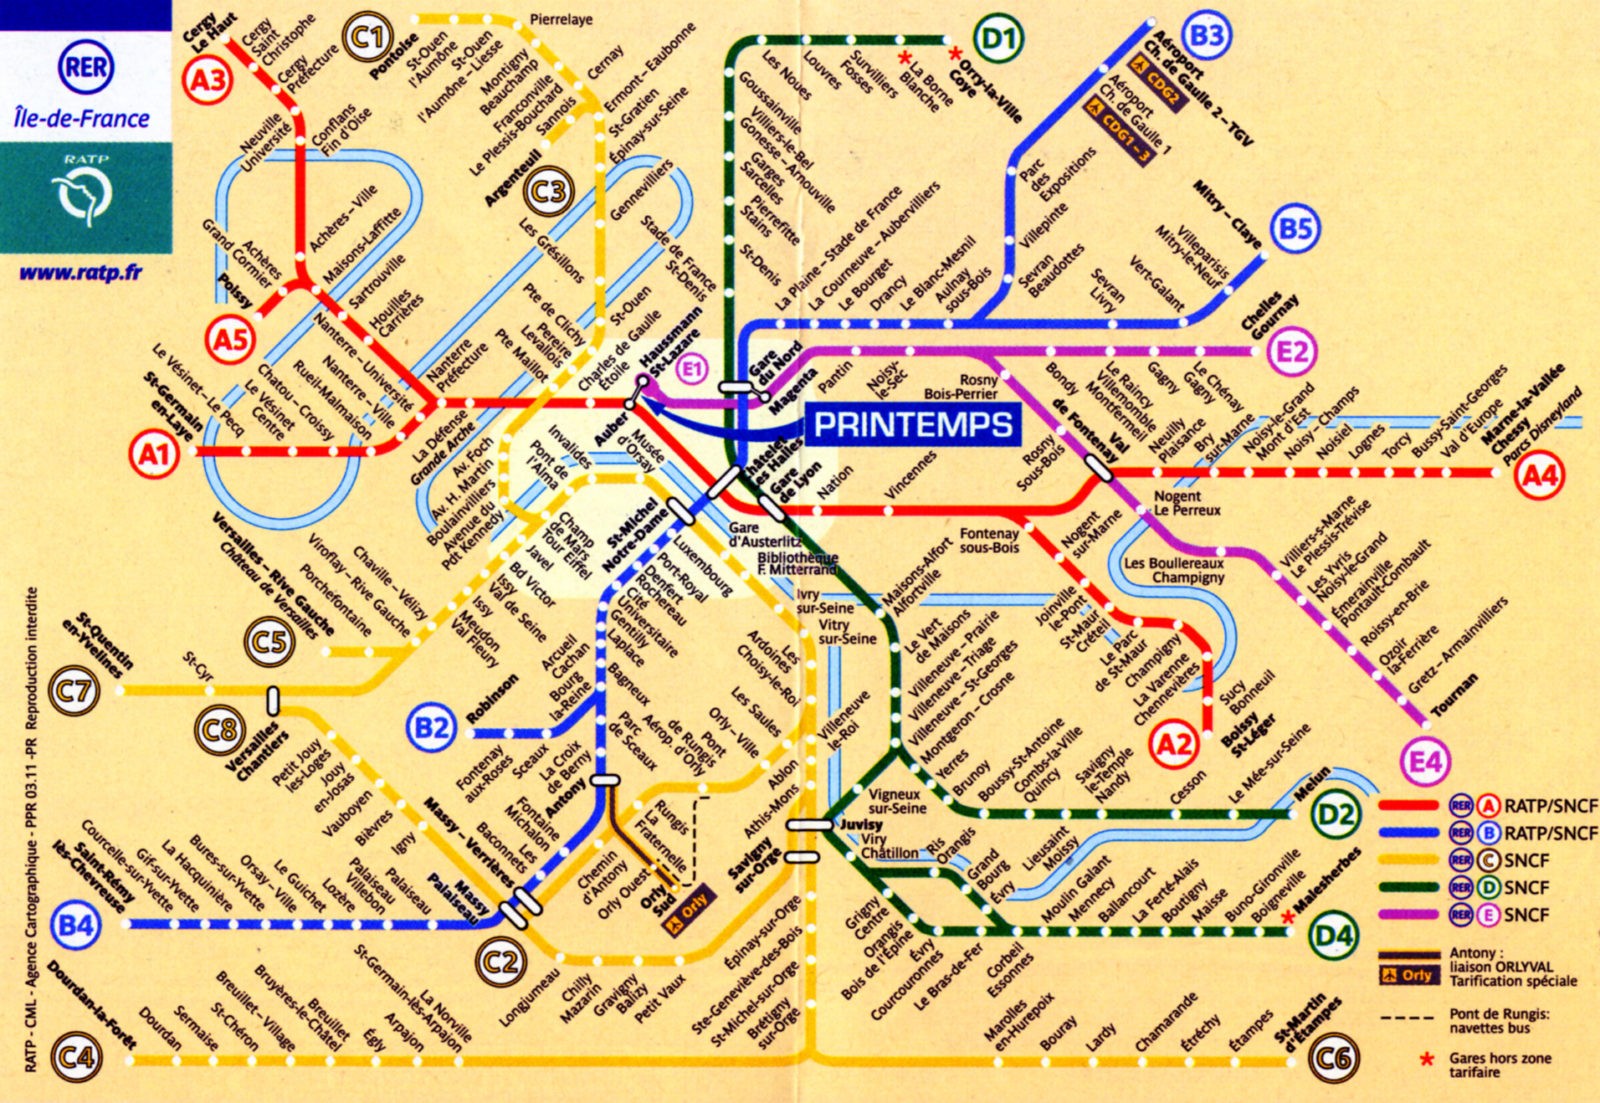 Метро Парижа: как пользоваться, билеты, схема, карта | Туры от АЭРОБЕЛСЕРВИС